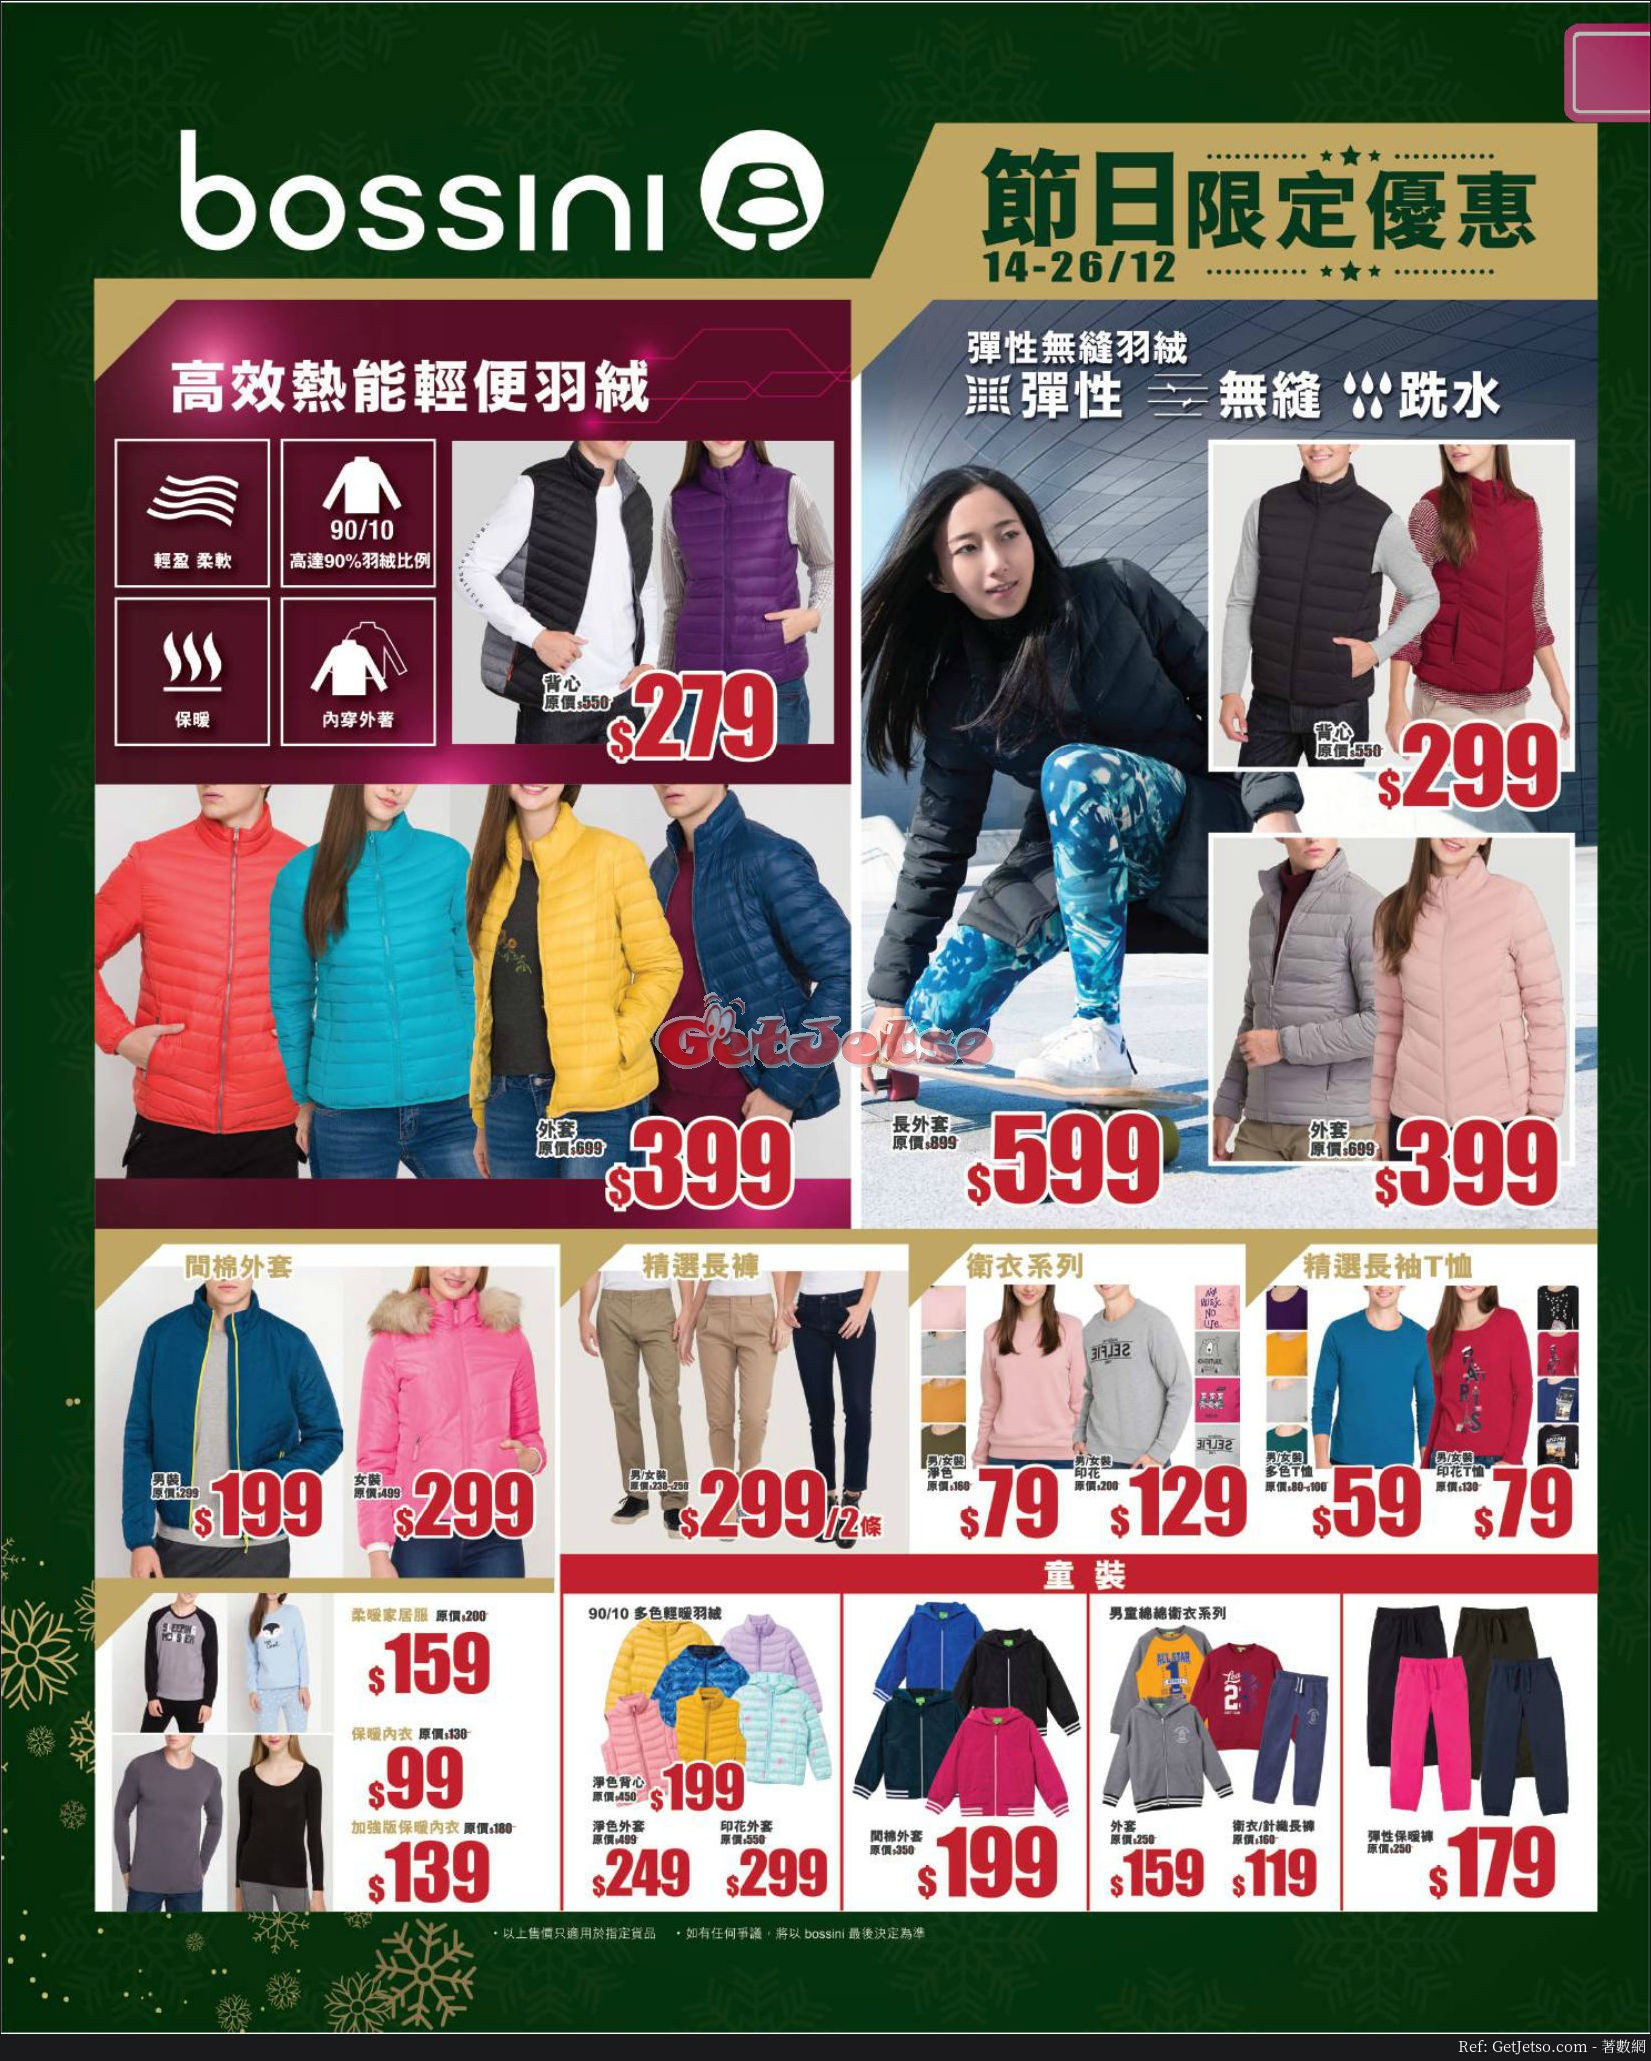 bossini 節日限定優惠(17年12月14-26日)圖片1